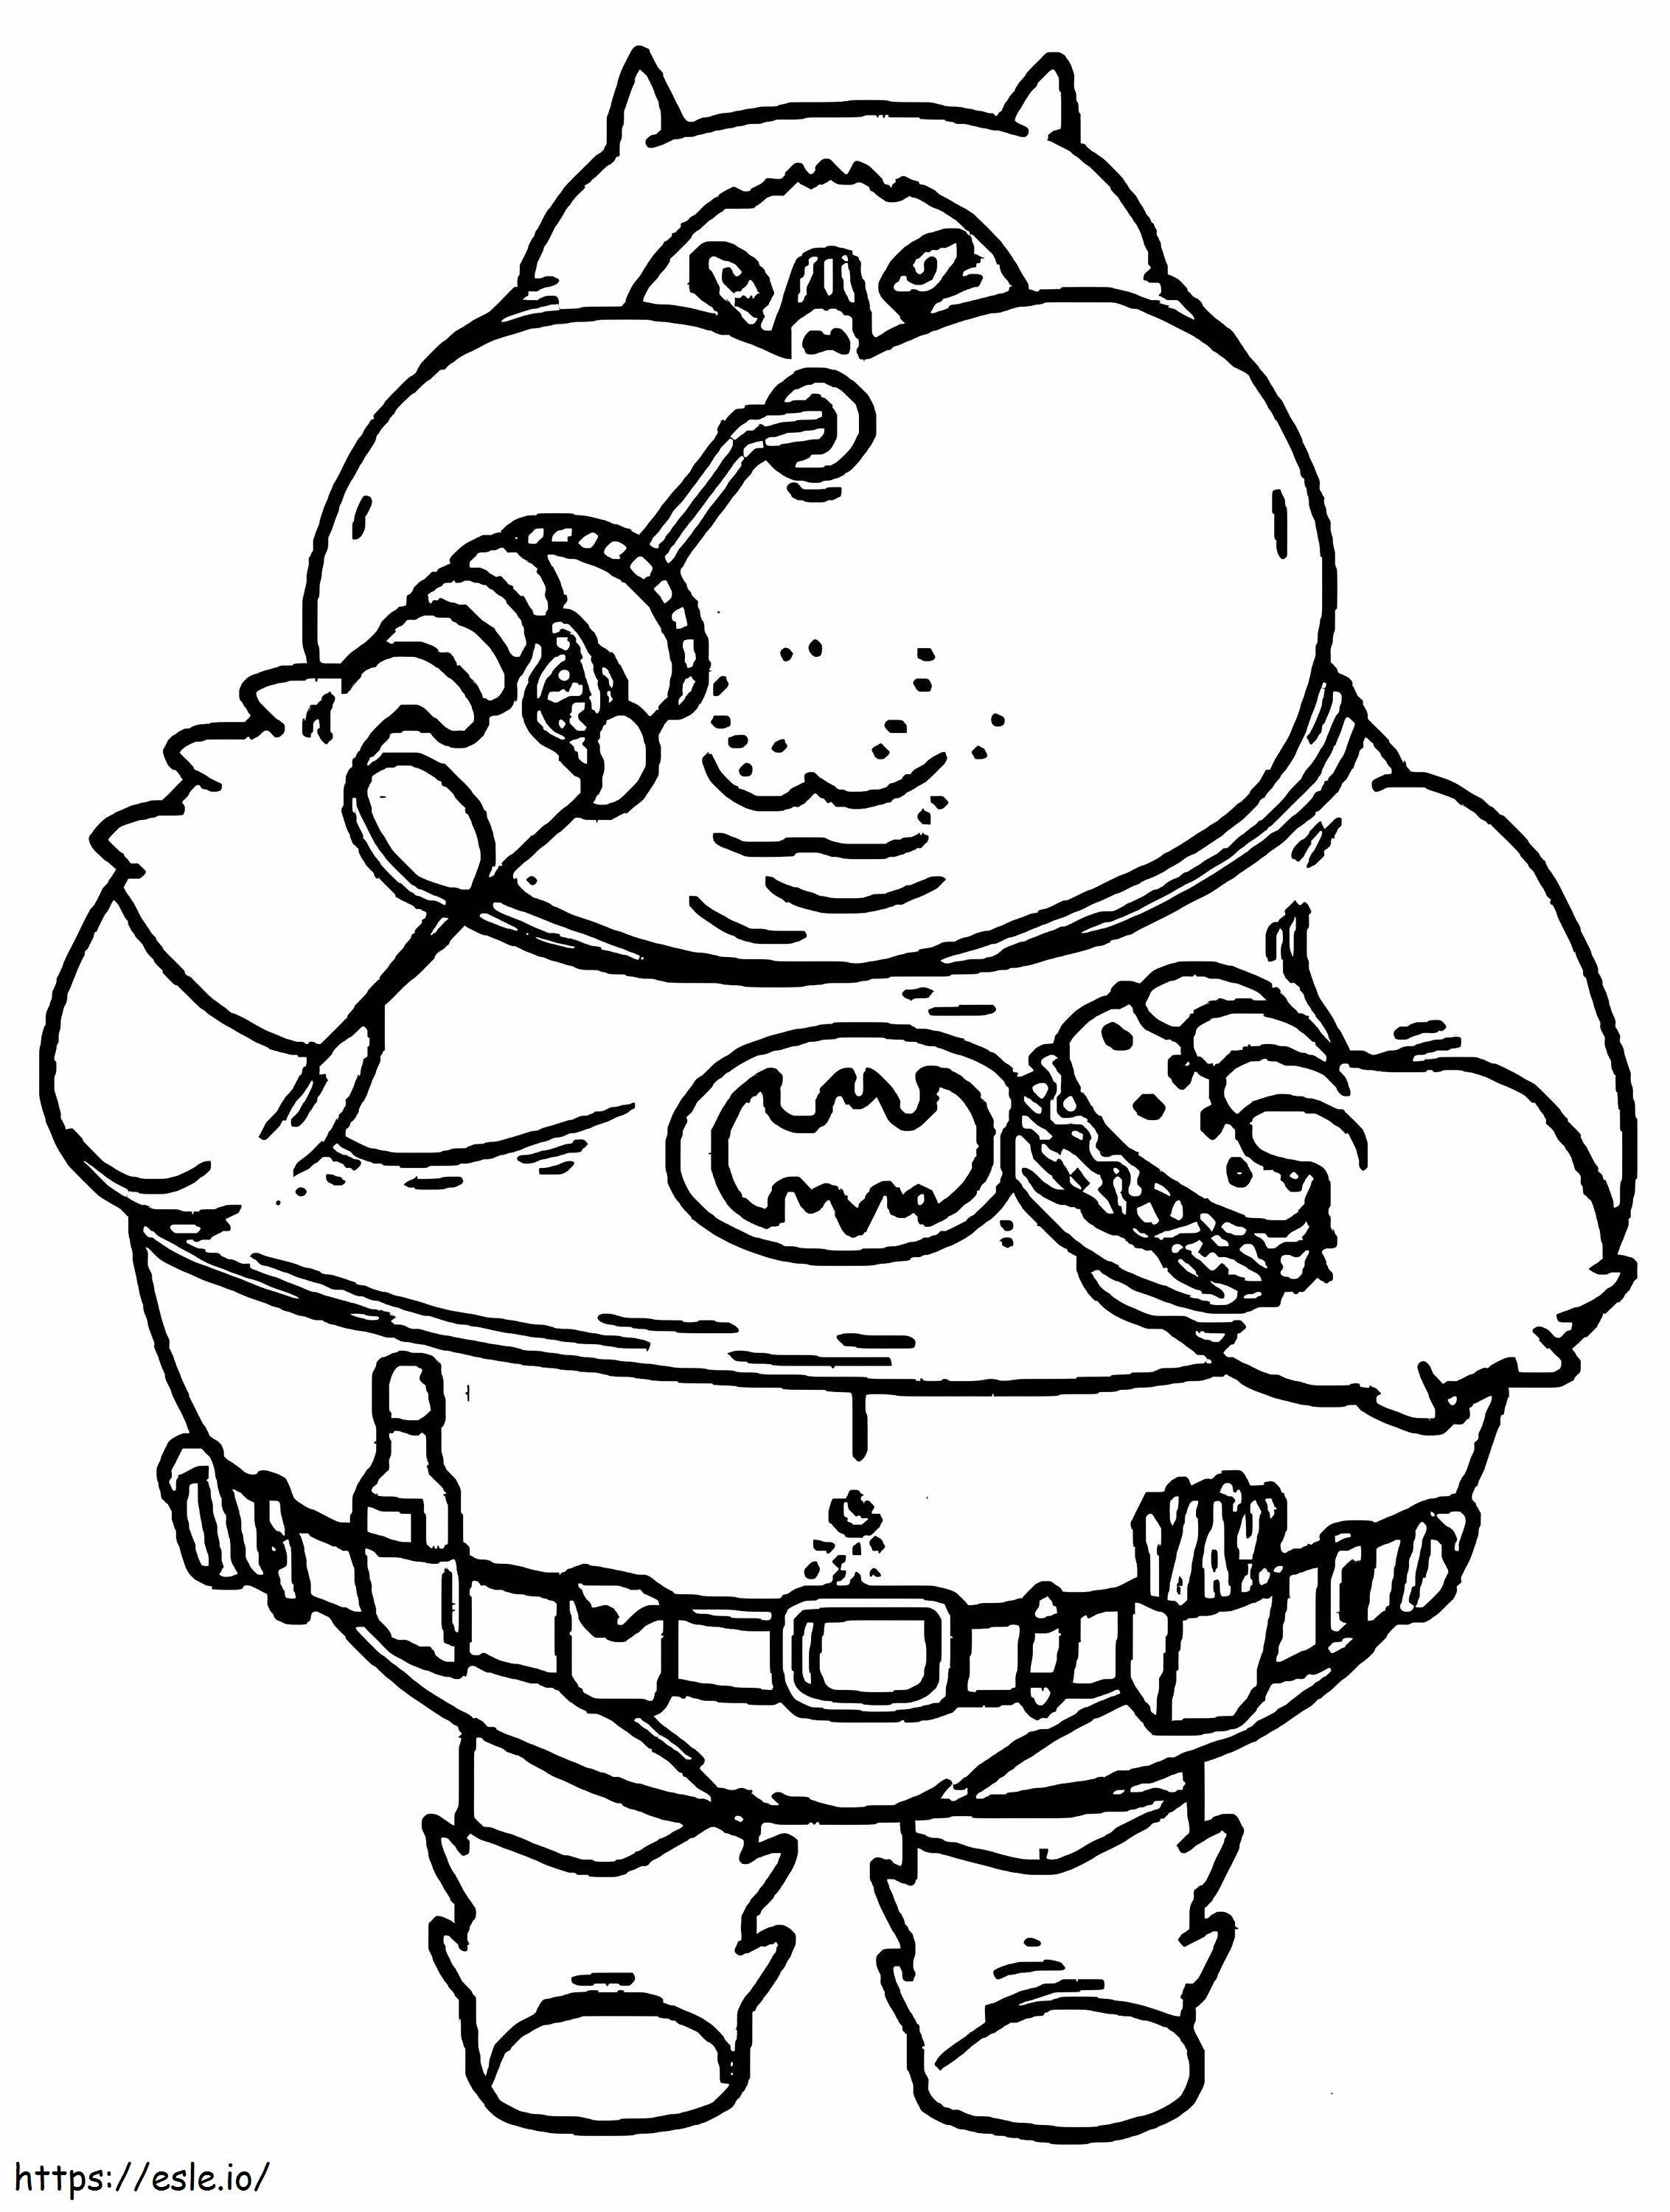 Fat Batman Eating Hamburger coloring page